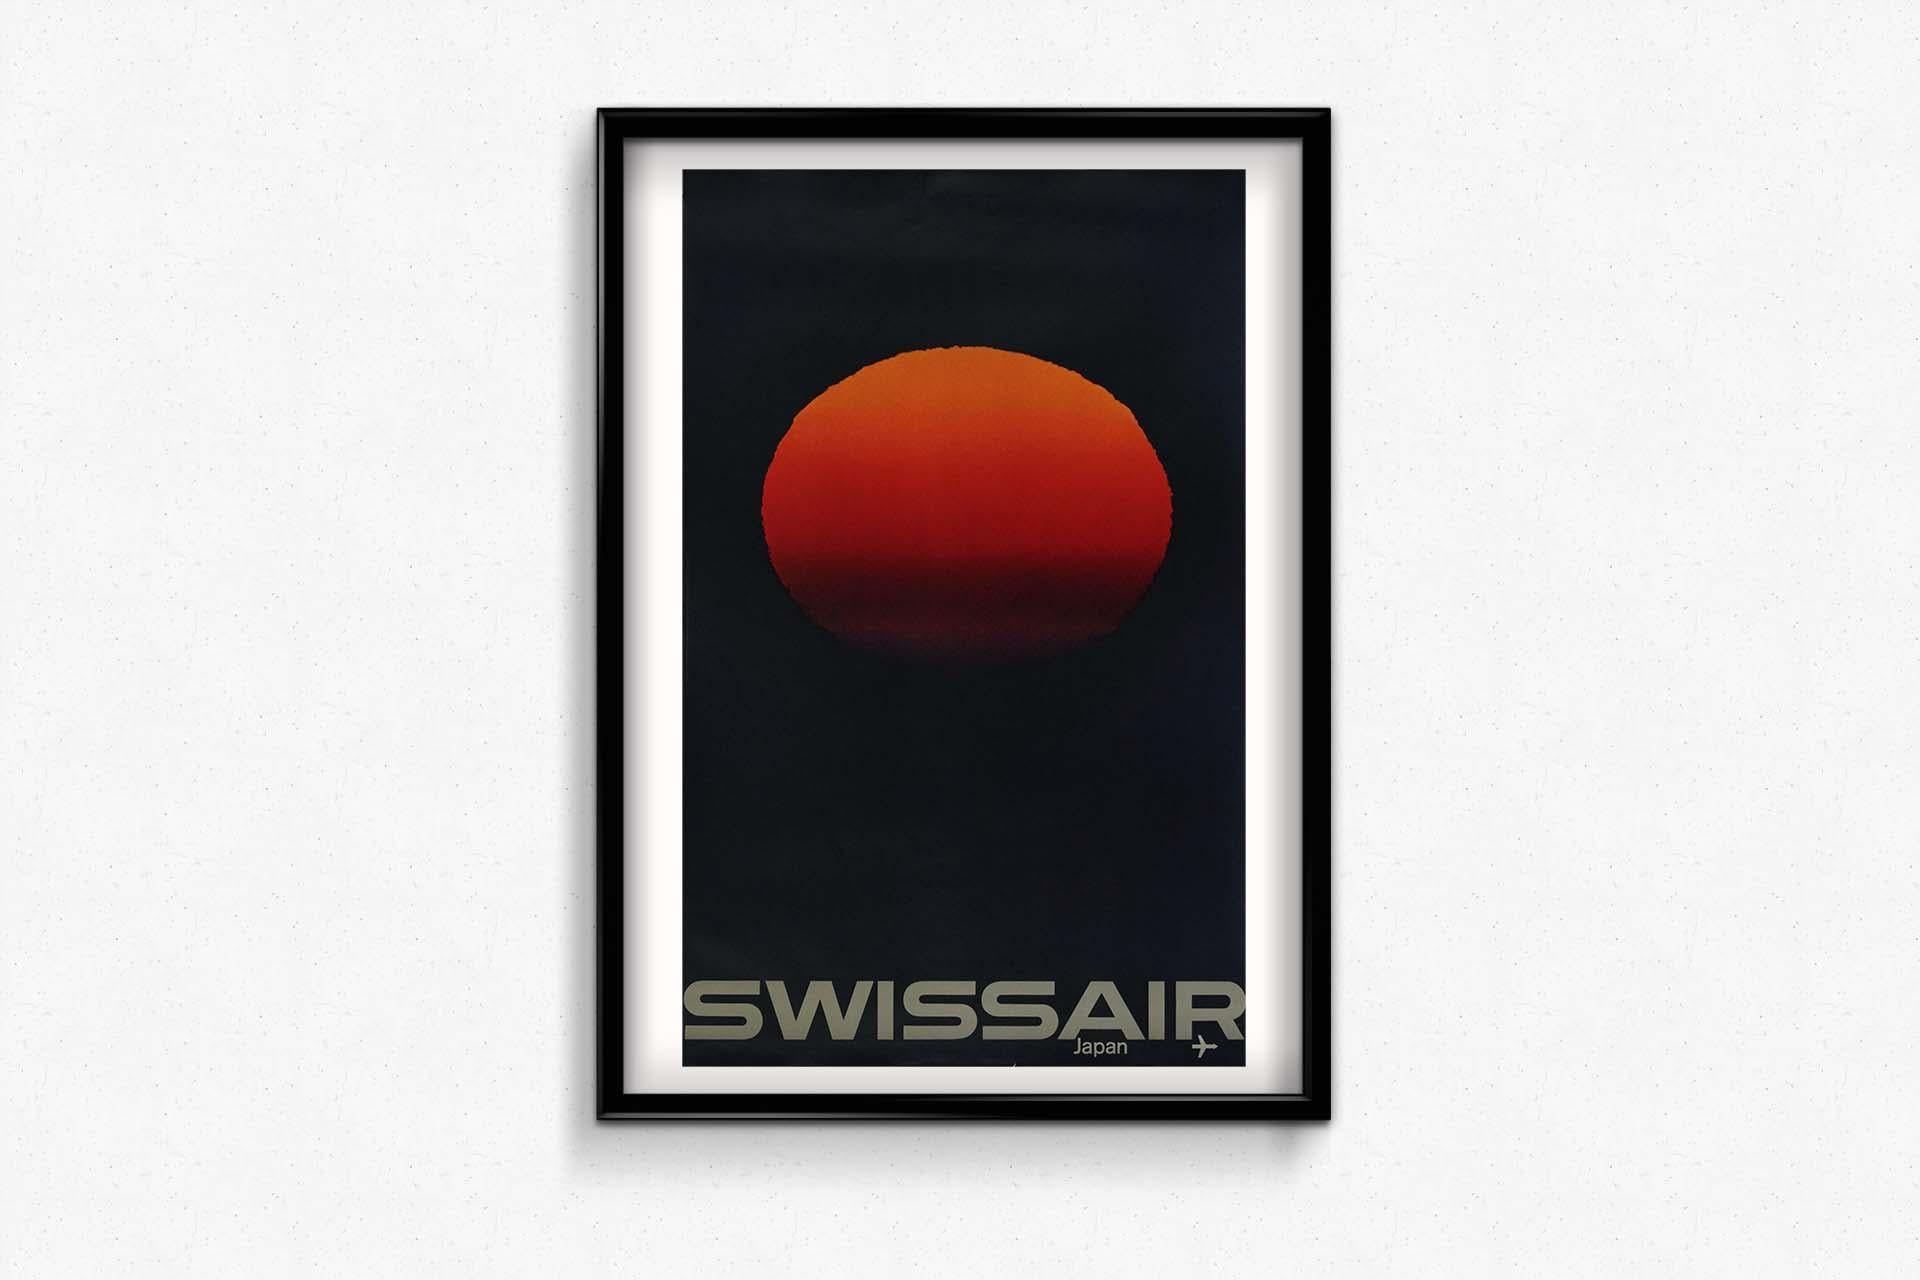 L'affiche de voyage originale de 1964 de Manfred Bingler et Emil Schulthess pour Swissair Japan capture l'essence de l'attrait culturel et de la beauté naturelle du Japon avec une représentation astucieuse d'un coucher de soleil reflétant le drapeau